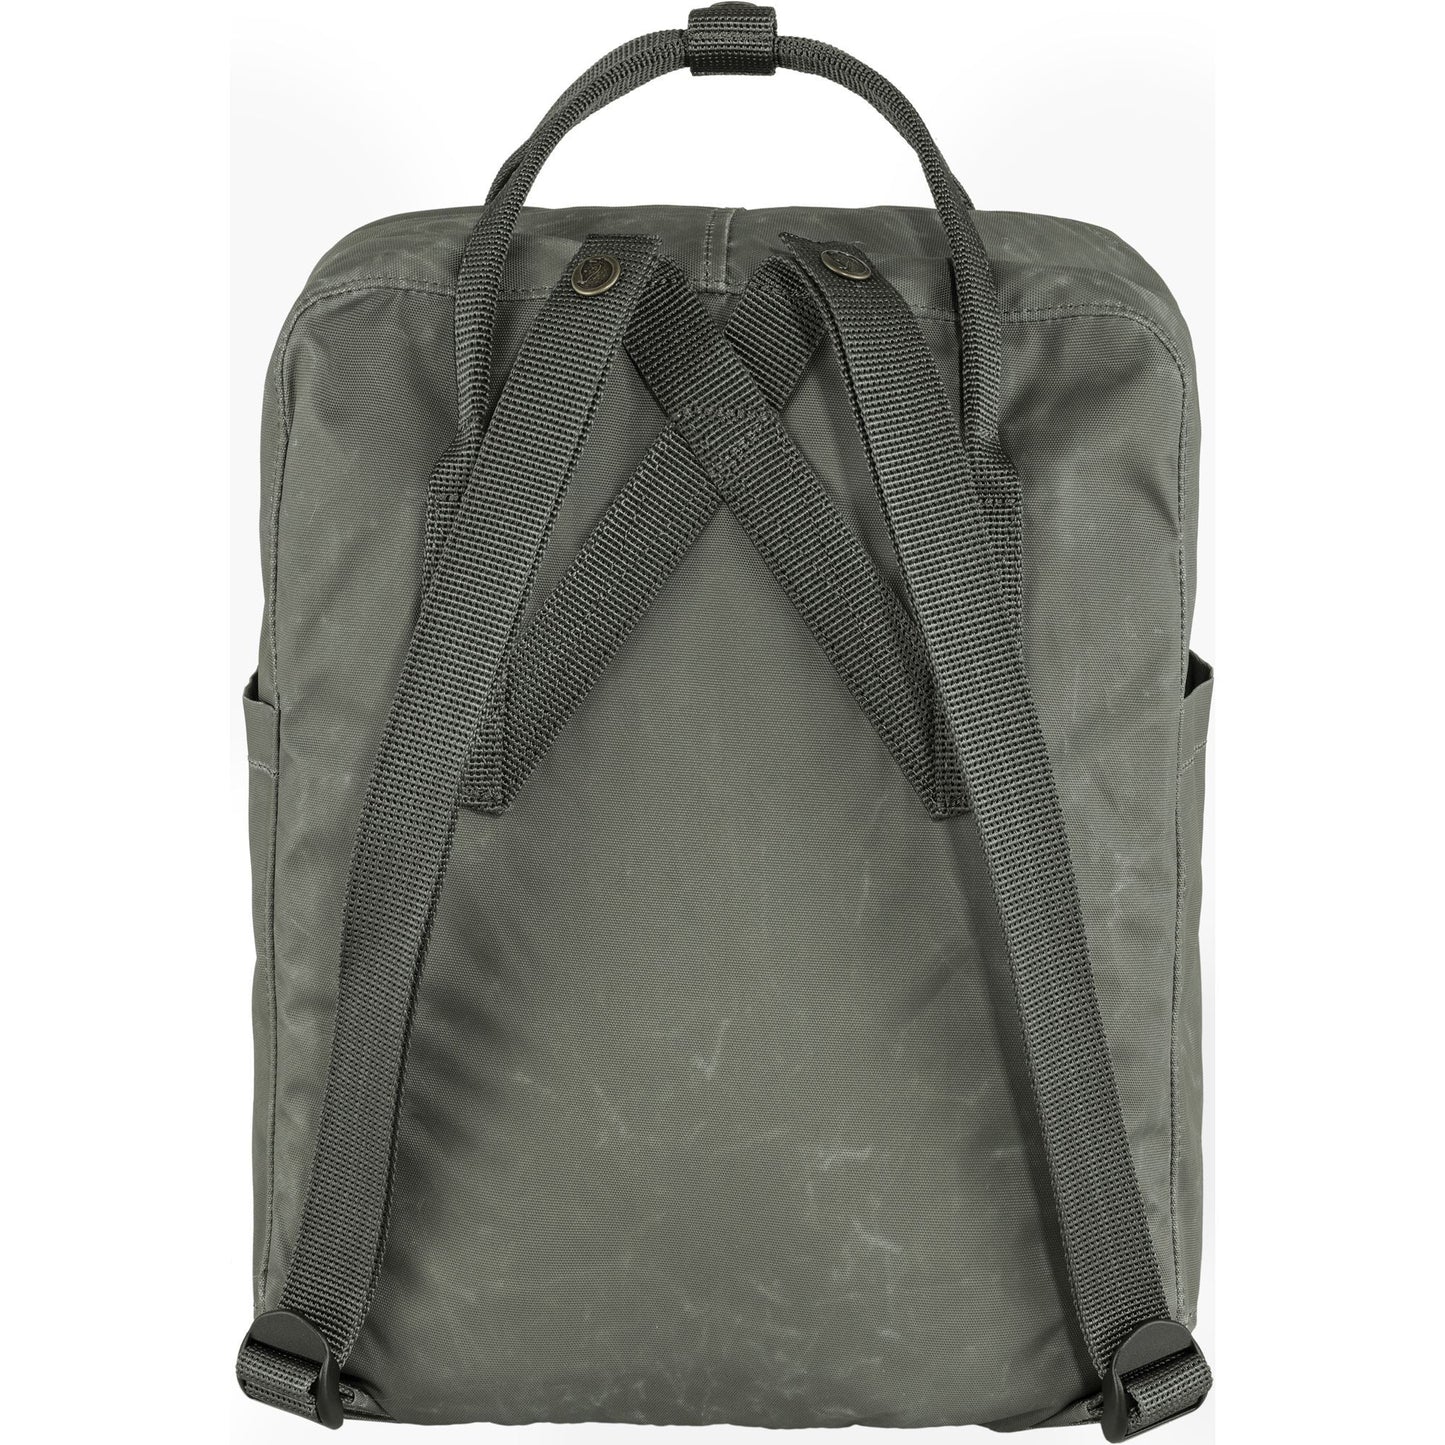 Fjallraven Tree - Kanken 狐狸袋 背囊 書包戶外背包 School bag outdoor backpack 16L - Charcoal Grey 23511-036